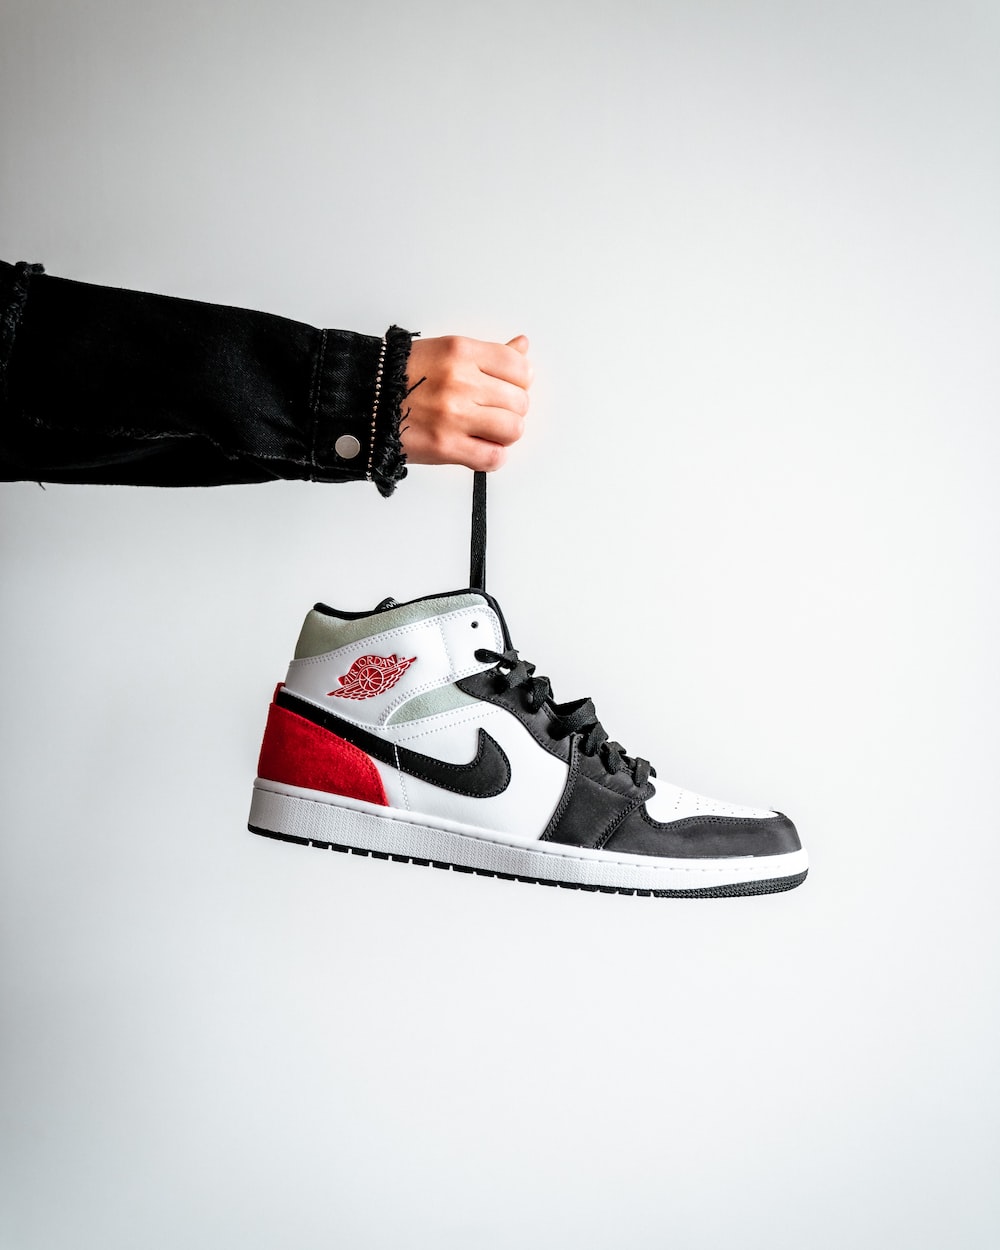 Nike Jordan Hd Wallpapers